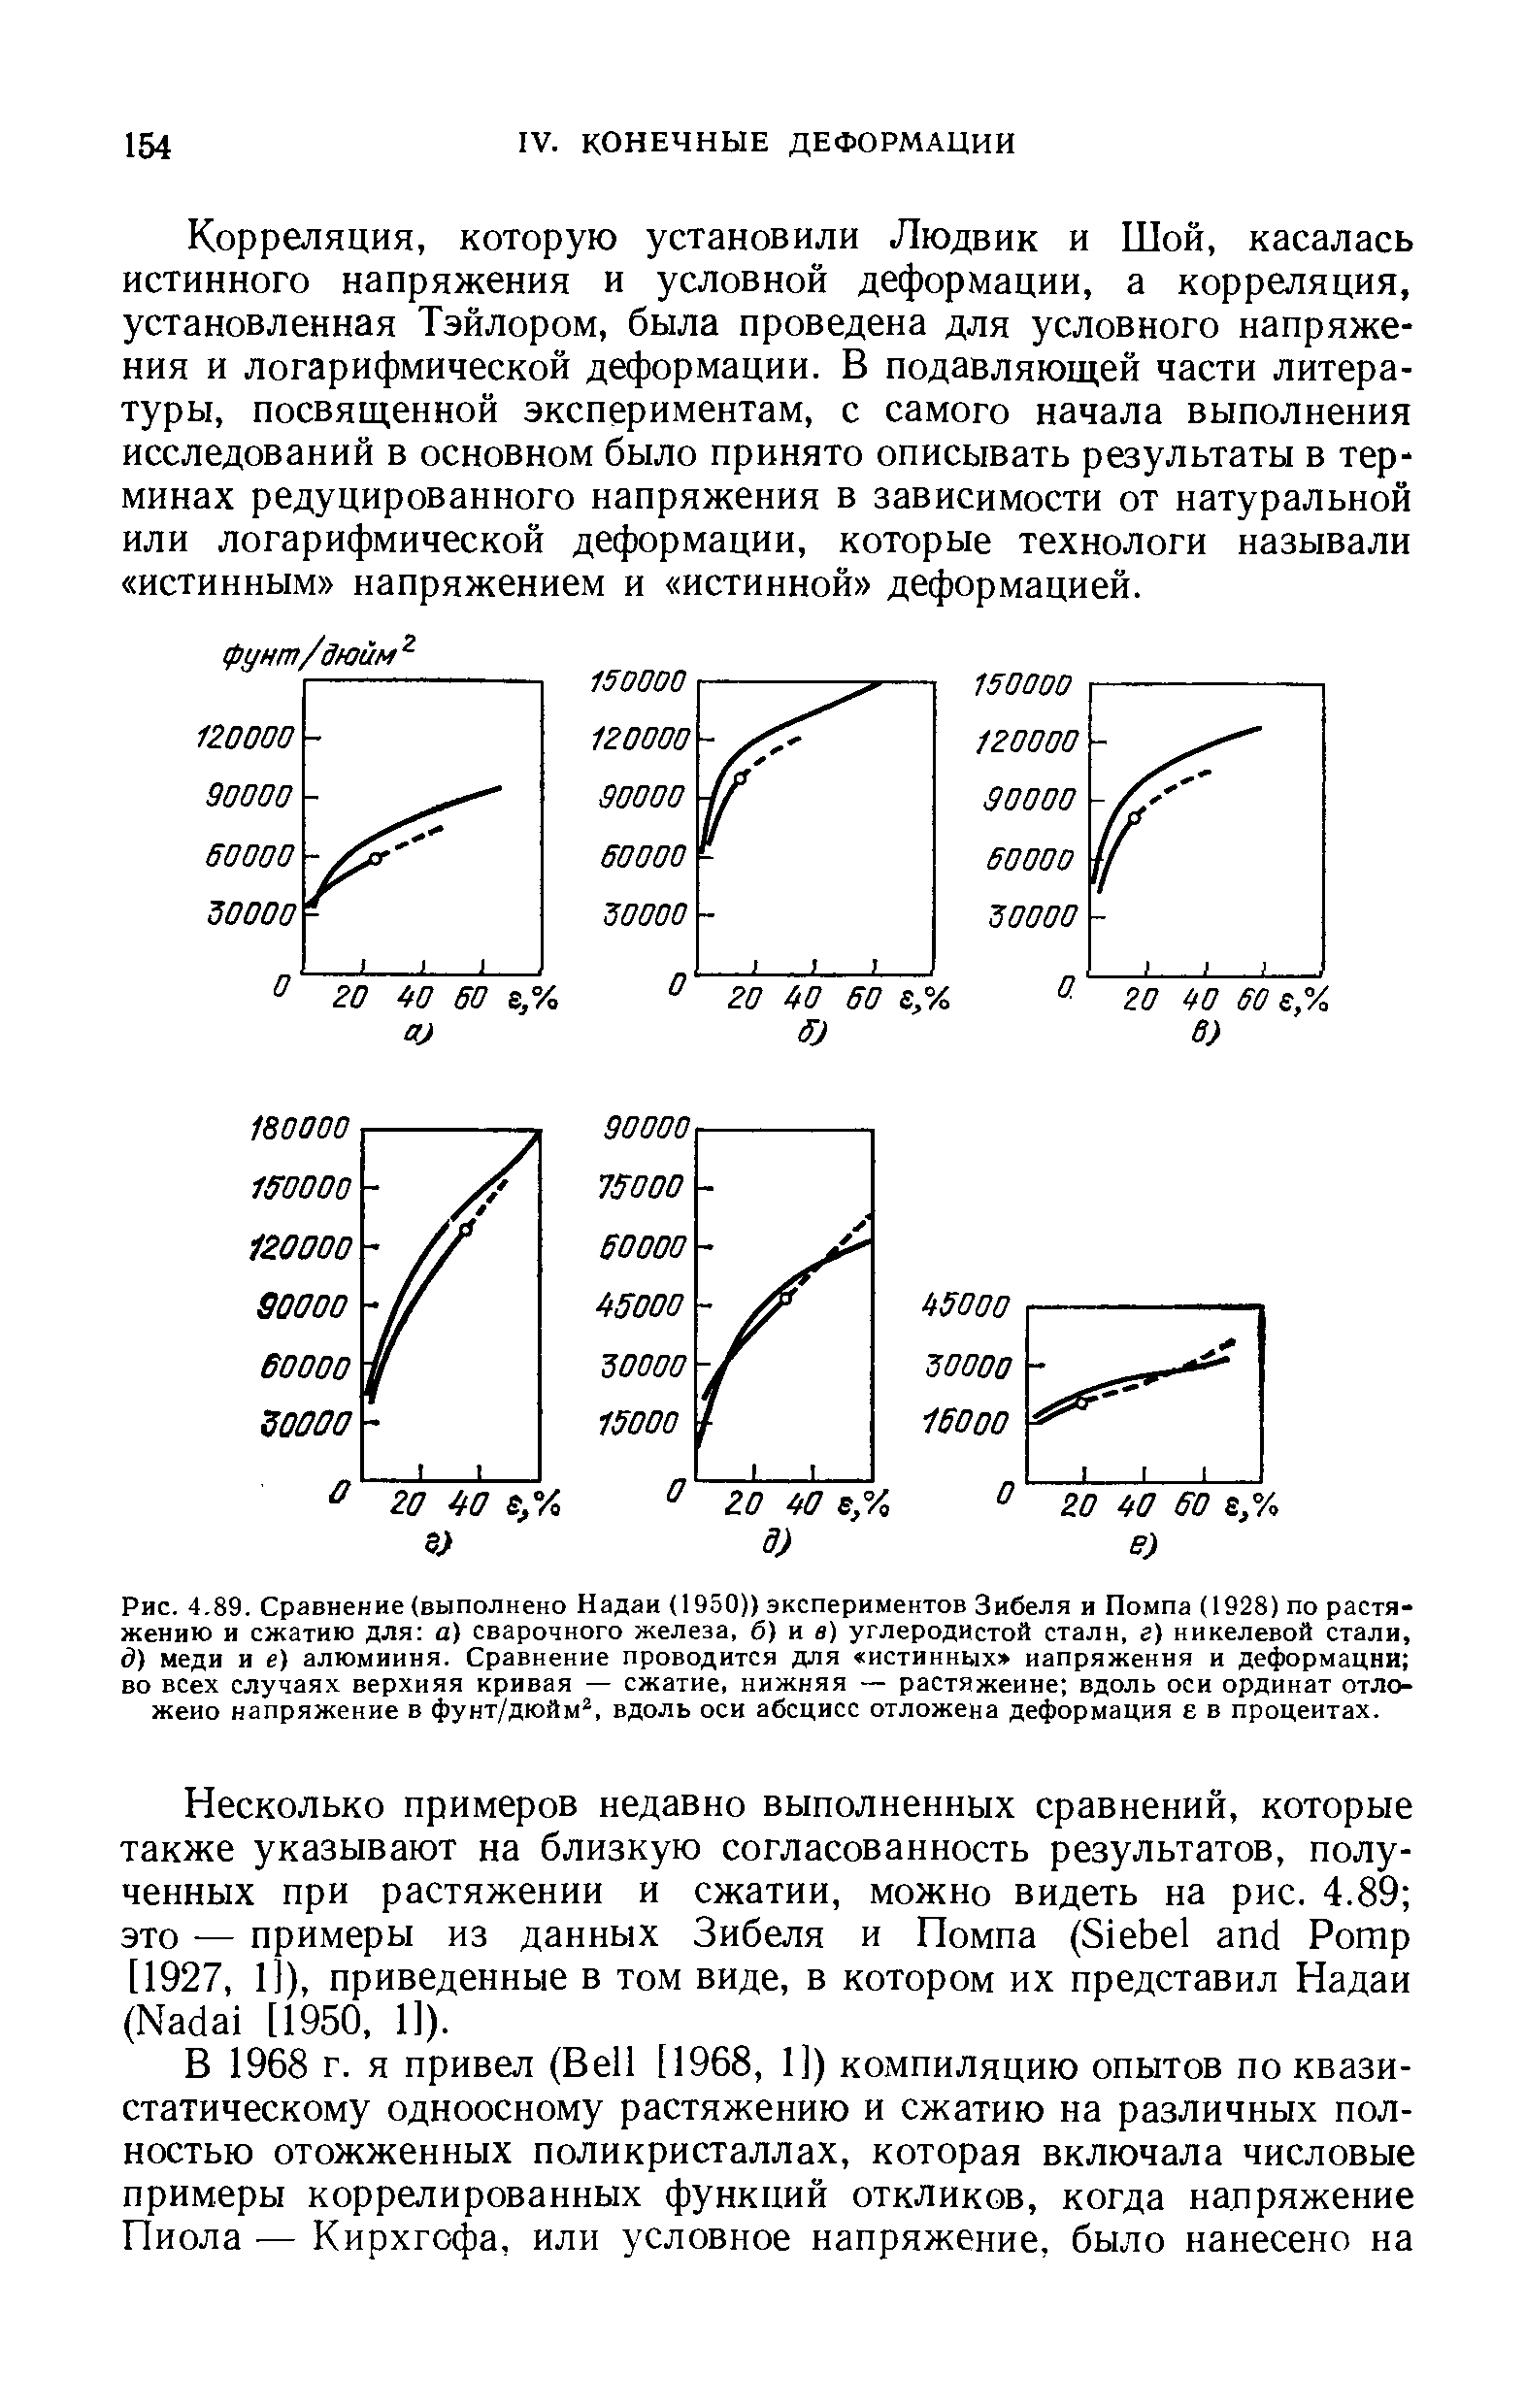 Рис. 4,89. Сравнение (выполнено Надаи (1950)) экспериментов Зибеля и Помпа (1928) по растяжению и сжатию для а) сварочного железа, б) и в) <a href="/info/6795">углеродистой стали</a>, г) <a href="/info/36270">никелевой стали</a>, д) меди и е) алюминия. Сравнение проводится для <a href="/info/28792">истинных напряжения</a> и деформации во всех случаях верхняя кривая — сжатие, нижняя — растяжение вдоль оси ординат отложено напряжение в фунт/дюйм , вдоль оси абсцисс отложена деформация е в процентах.
